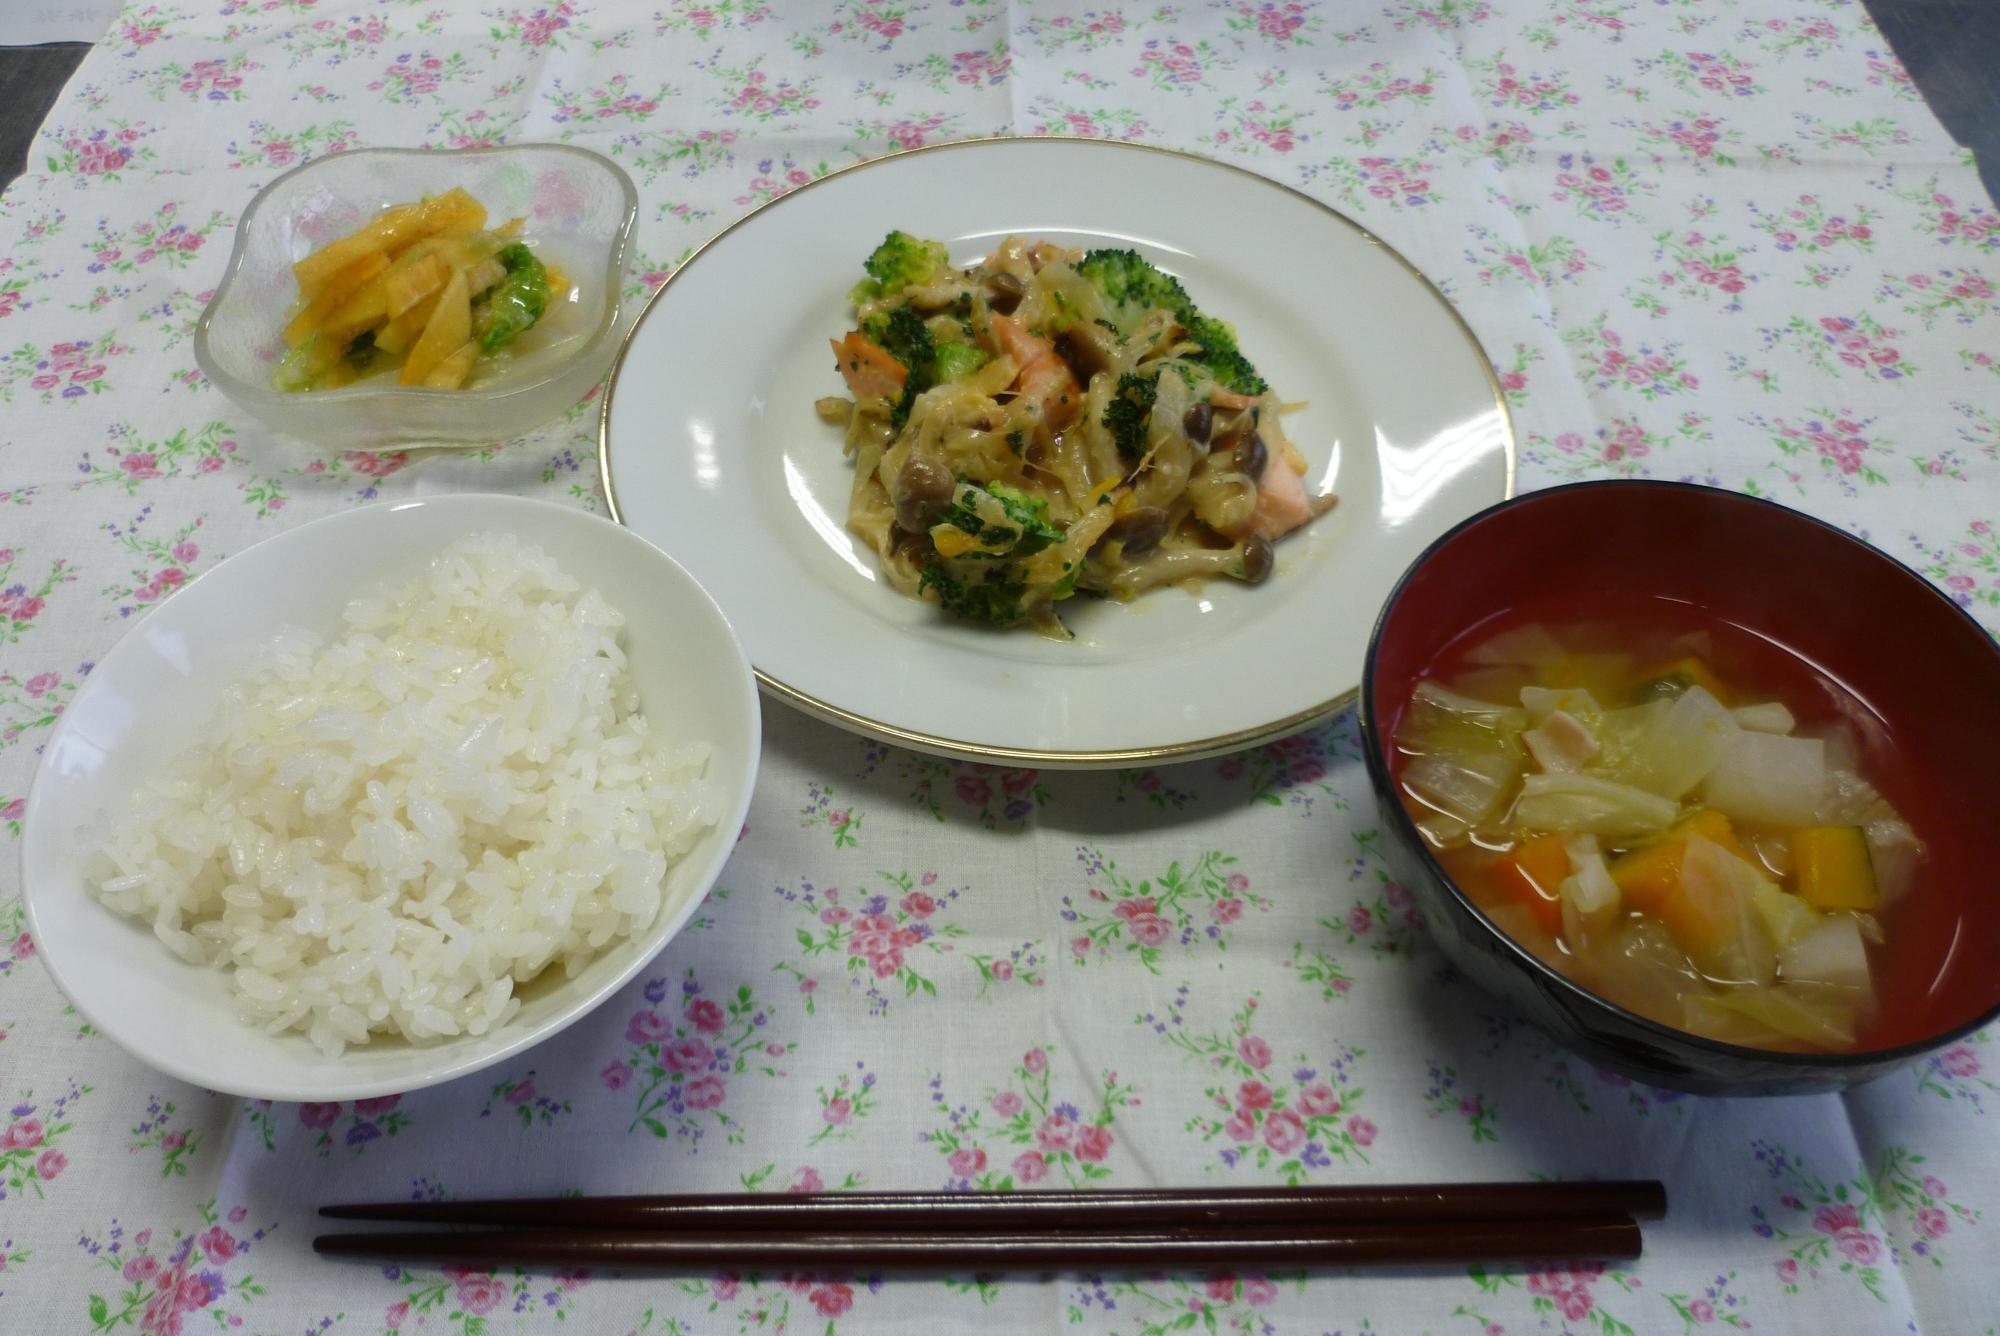 白菜と柿の甘酢和え、鮭のコーンクリーム焼き、野菜がたくさん入ったスープ、白米、漬物がテーブルの上に並べられてある写真